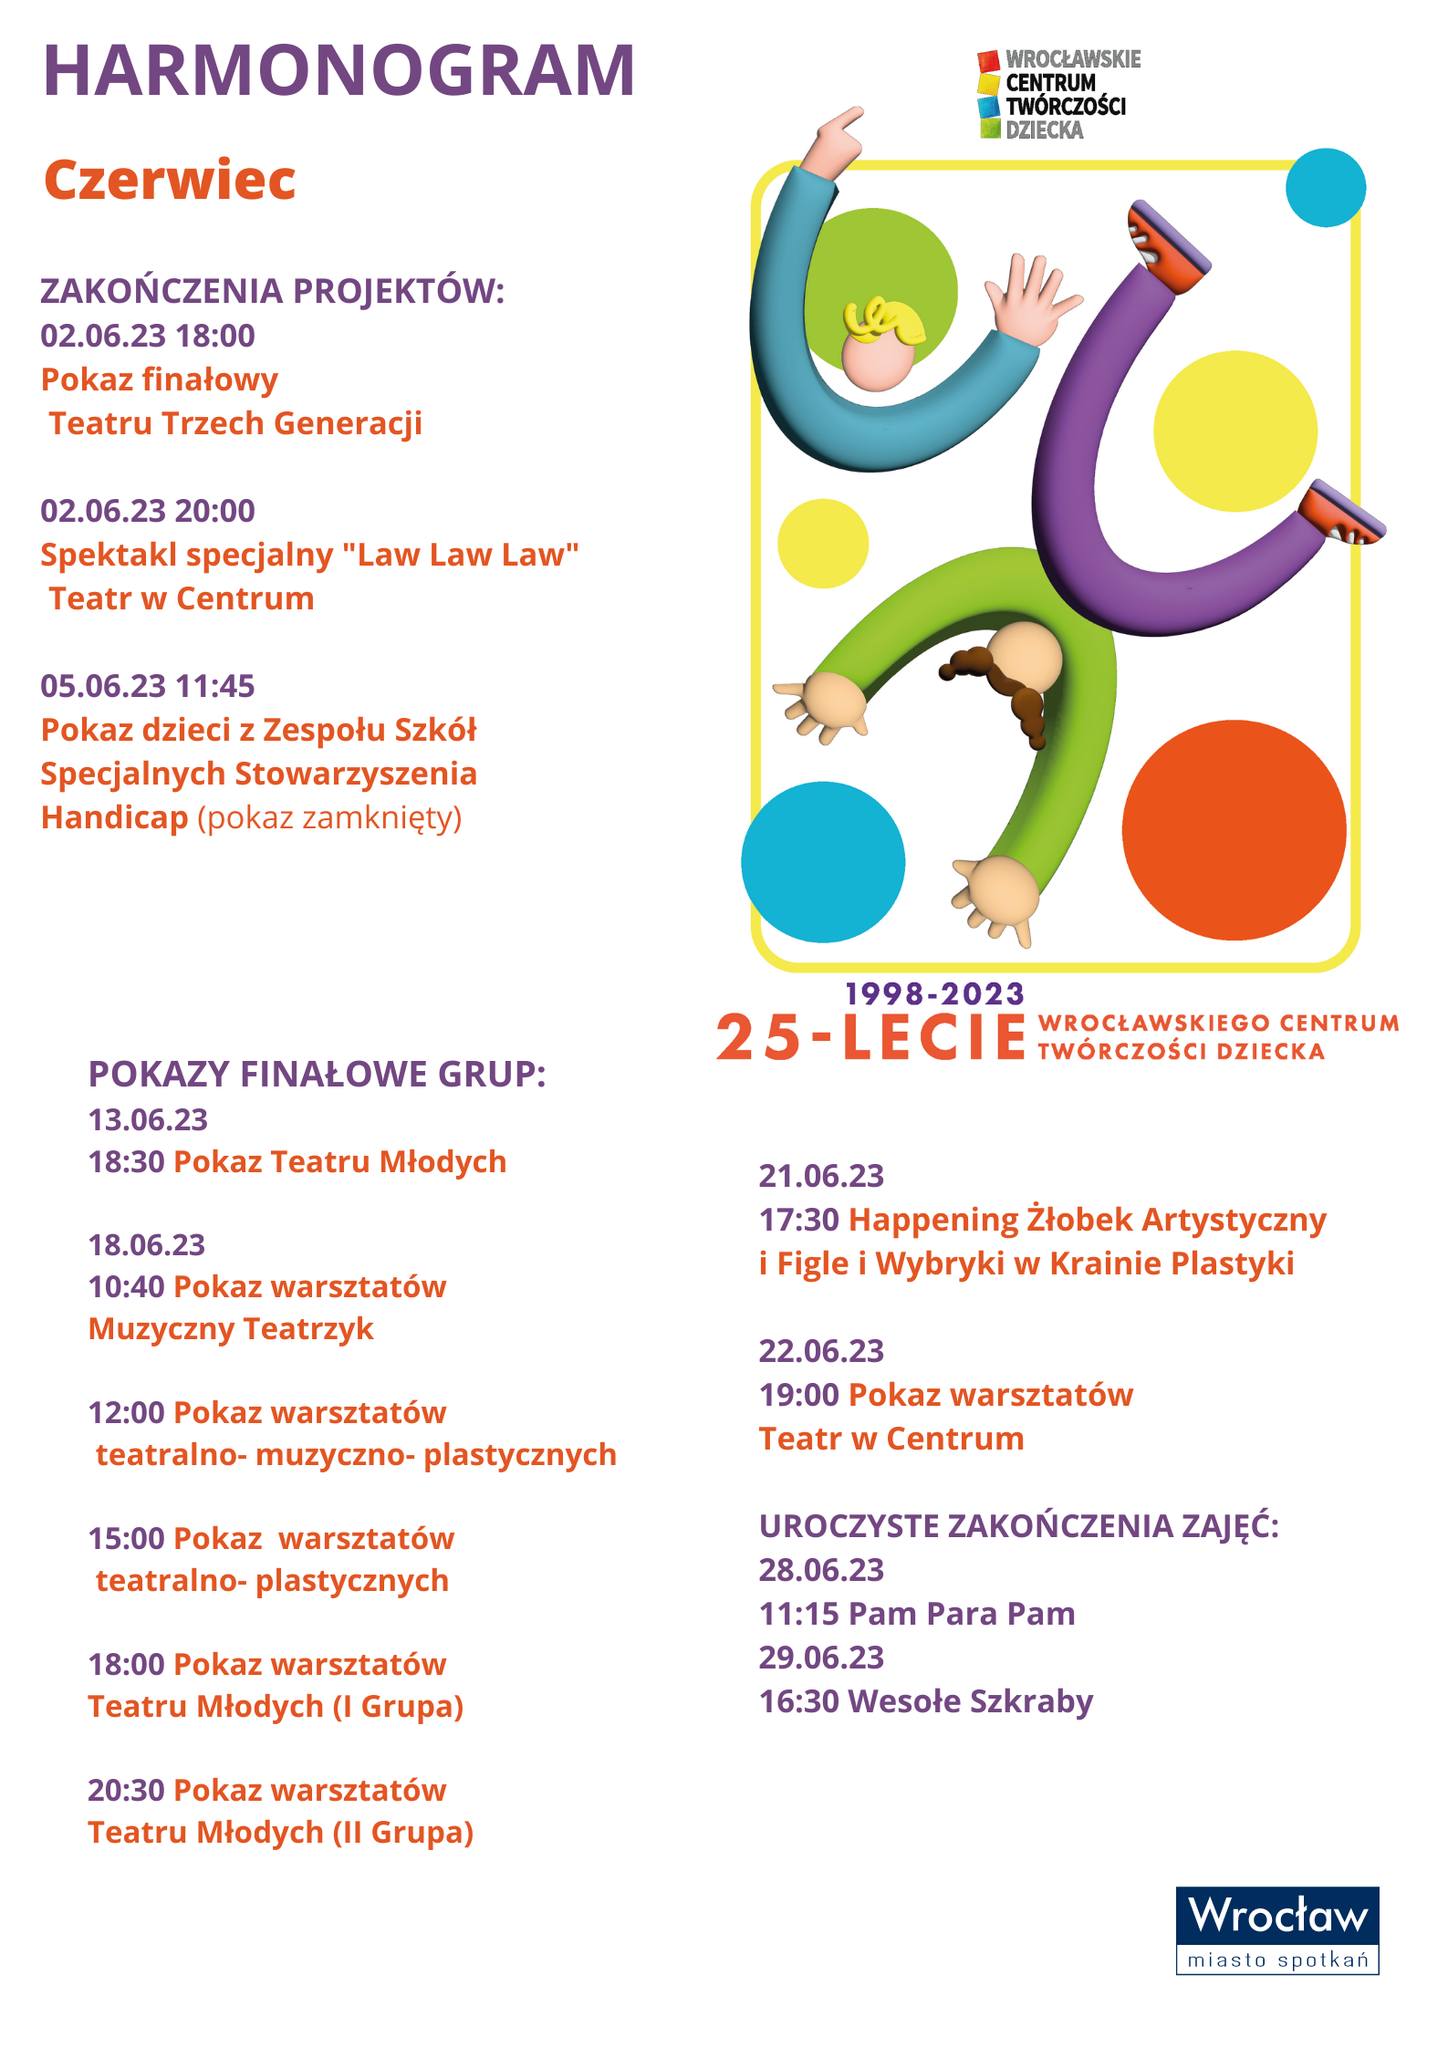 25-lecie Wrocławskiego Centrum Twórczości Dziecka